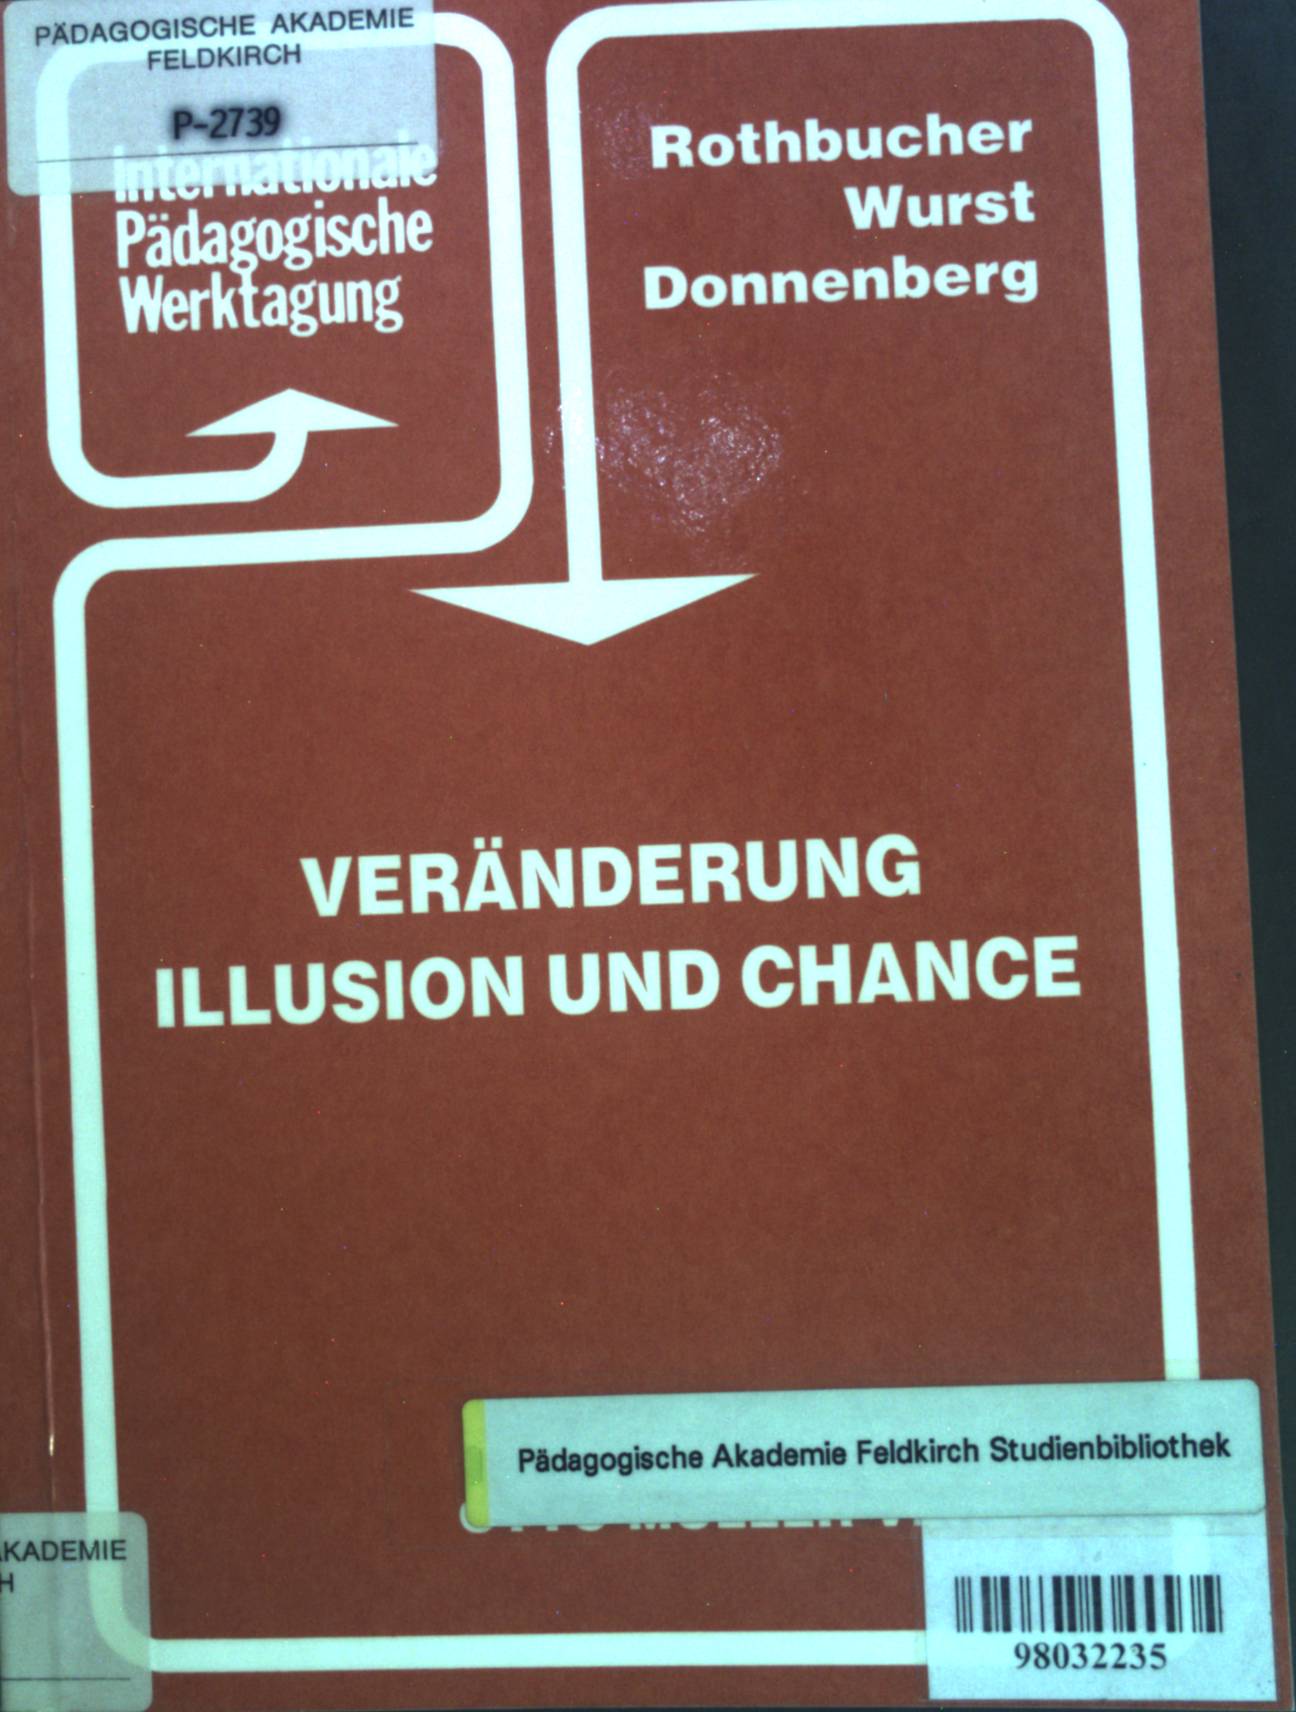 Veränderungen Illusion und Chance. Internationale Pädagogische Werktagung Berichtband 1991